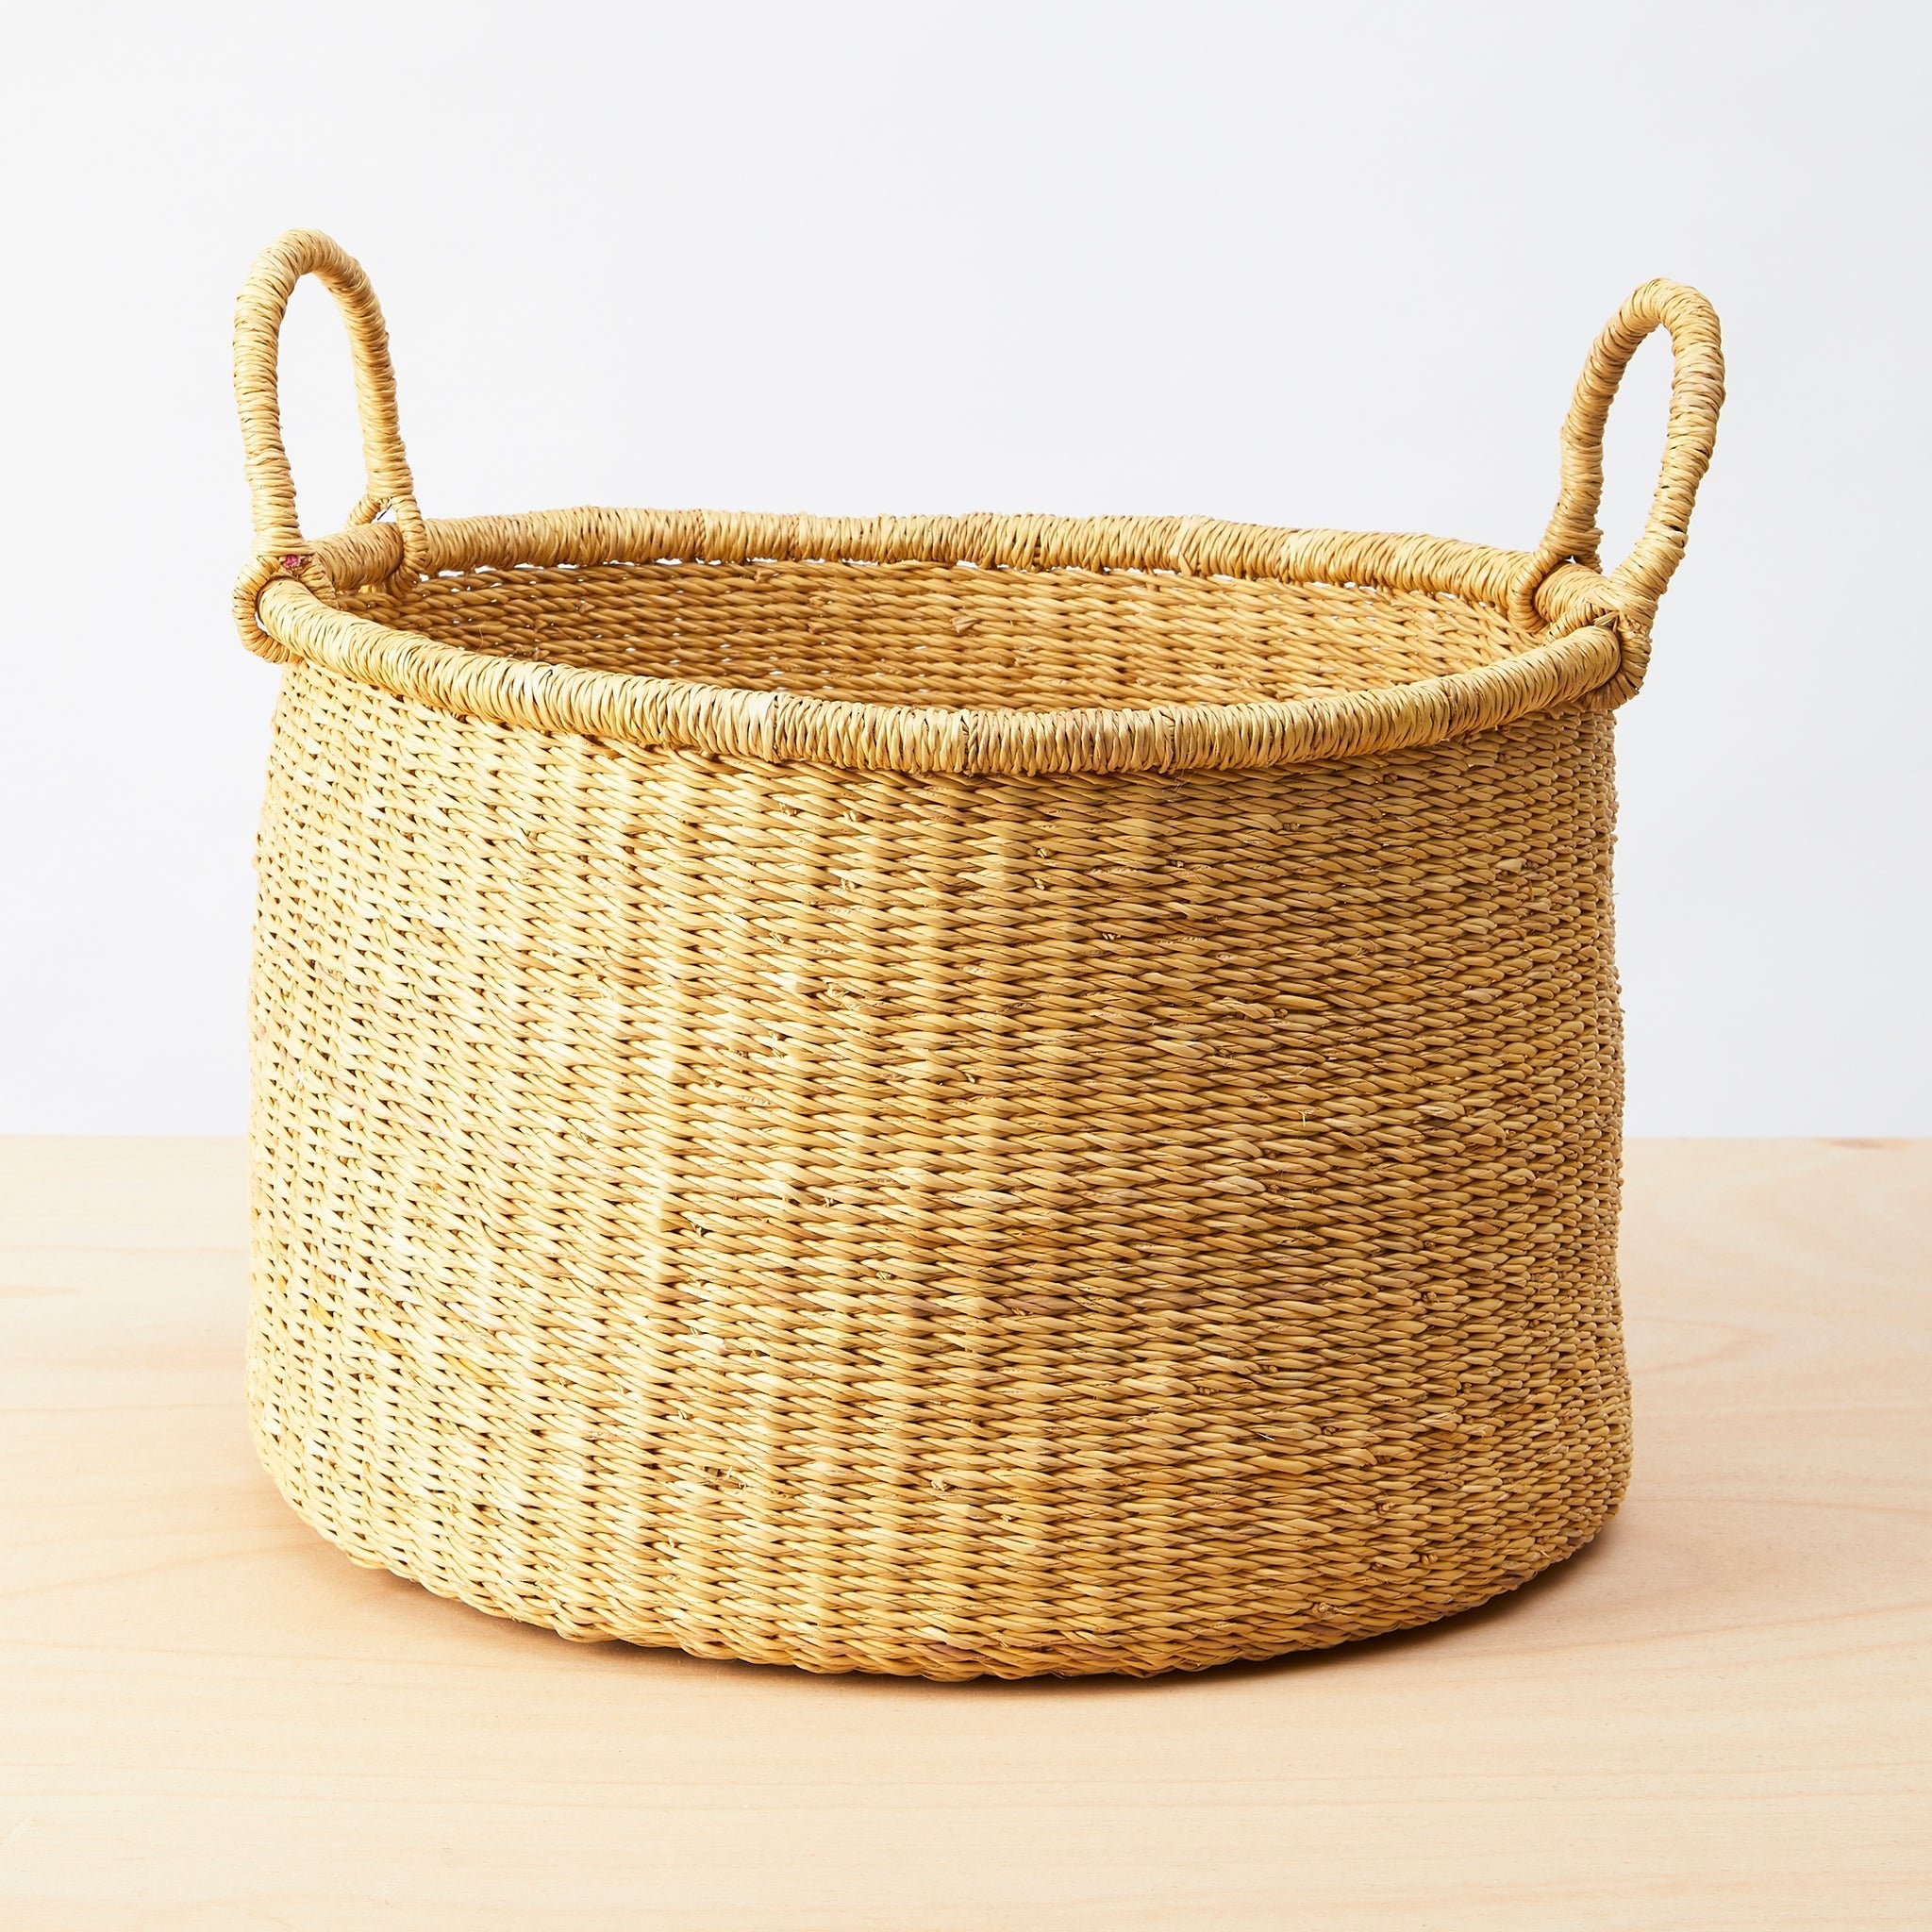 Bolga storage basket - By Native